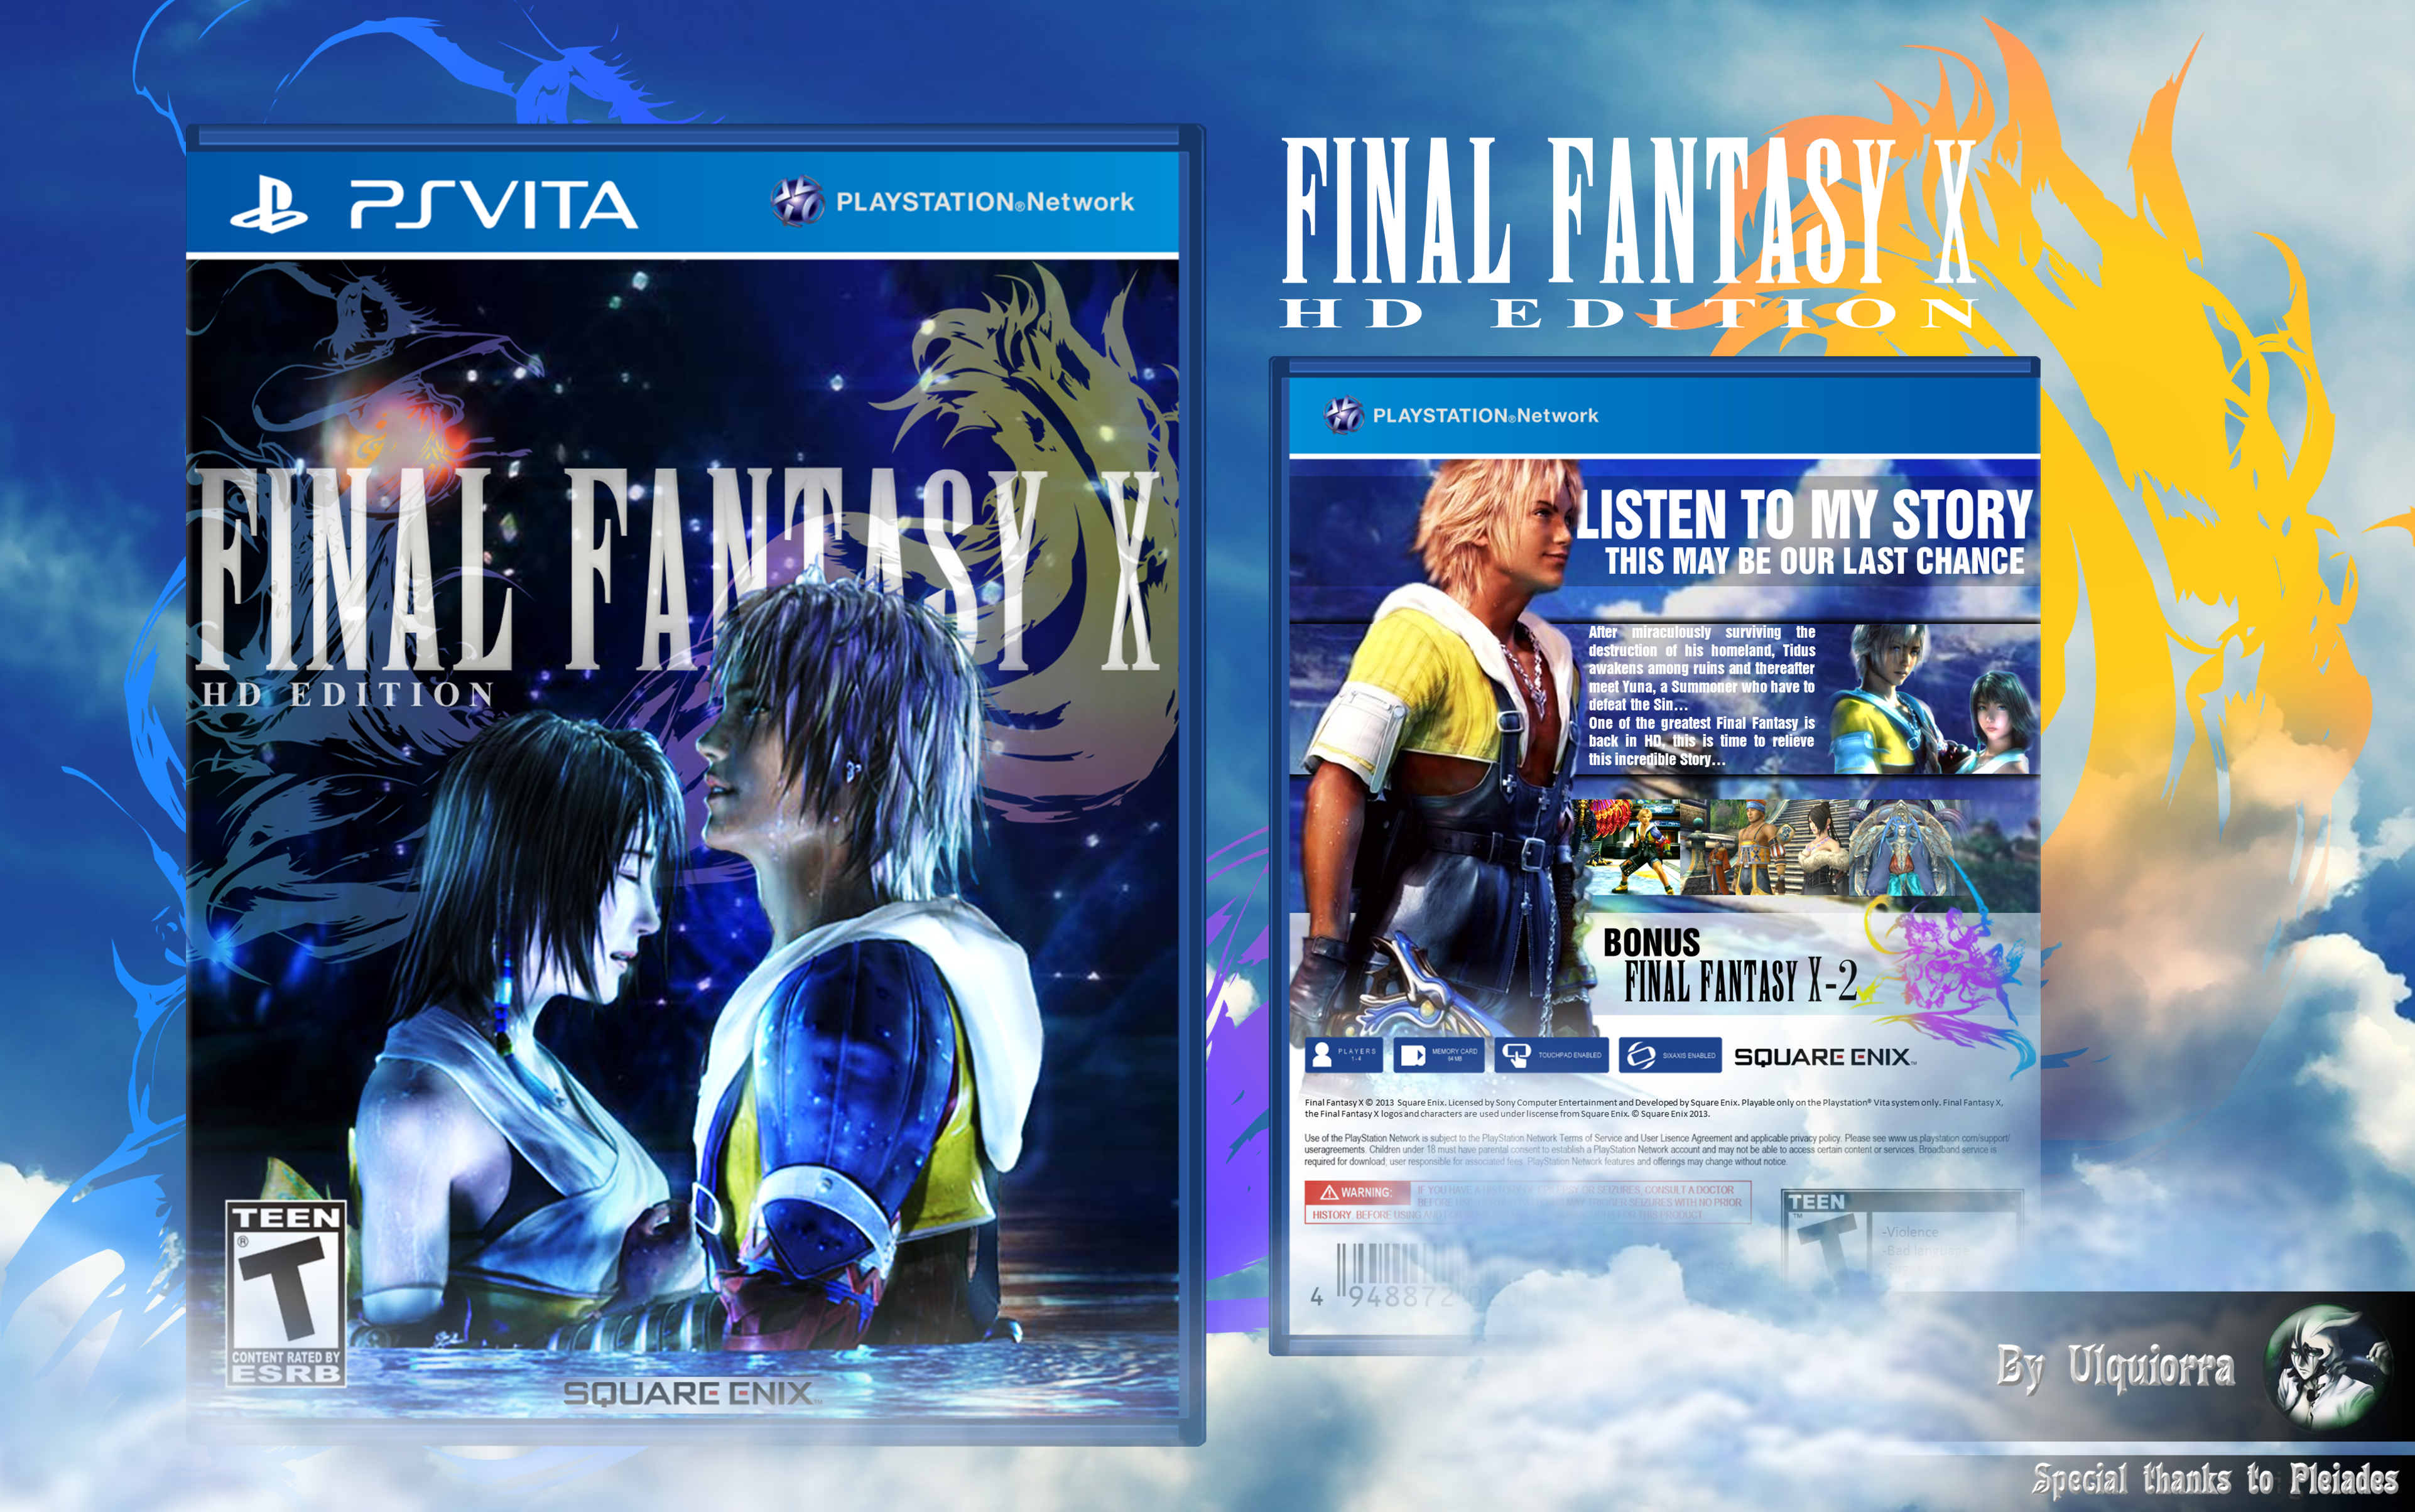 Final Fantasy X: HD Edition box cover